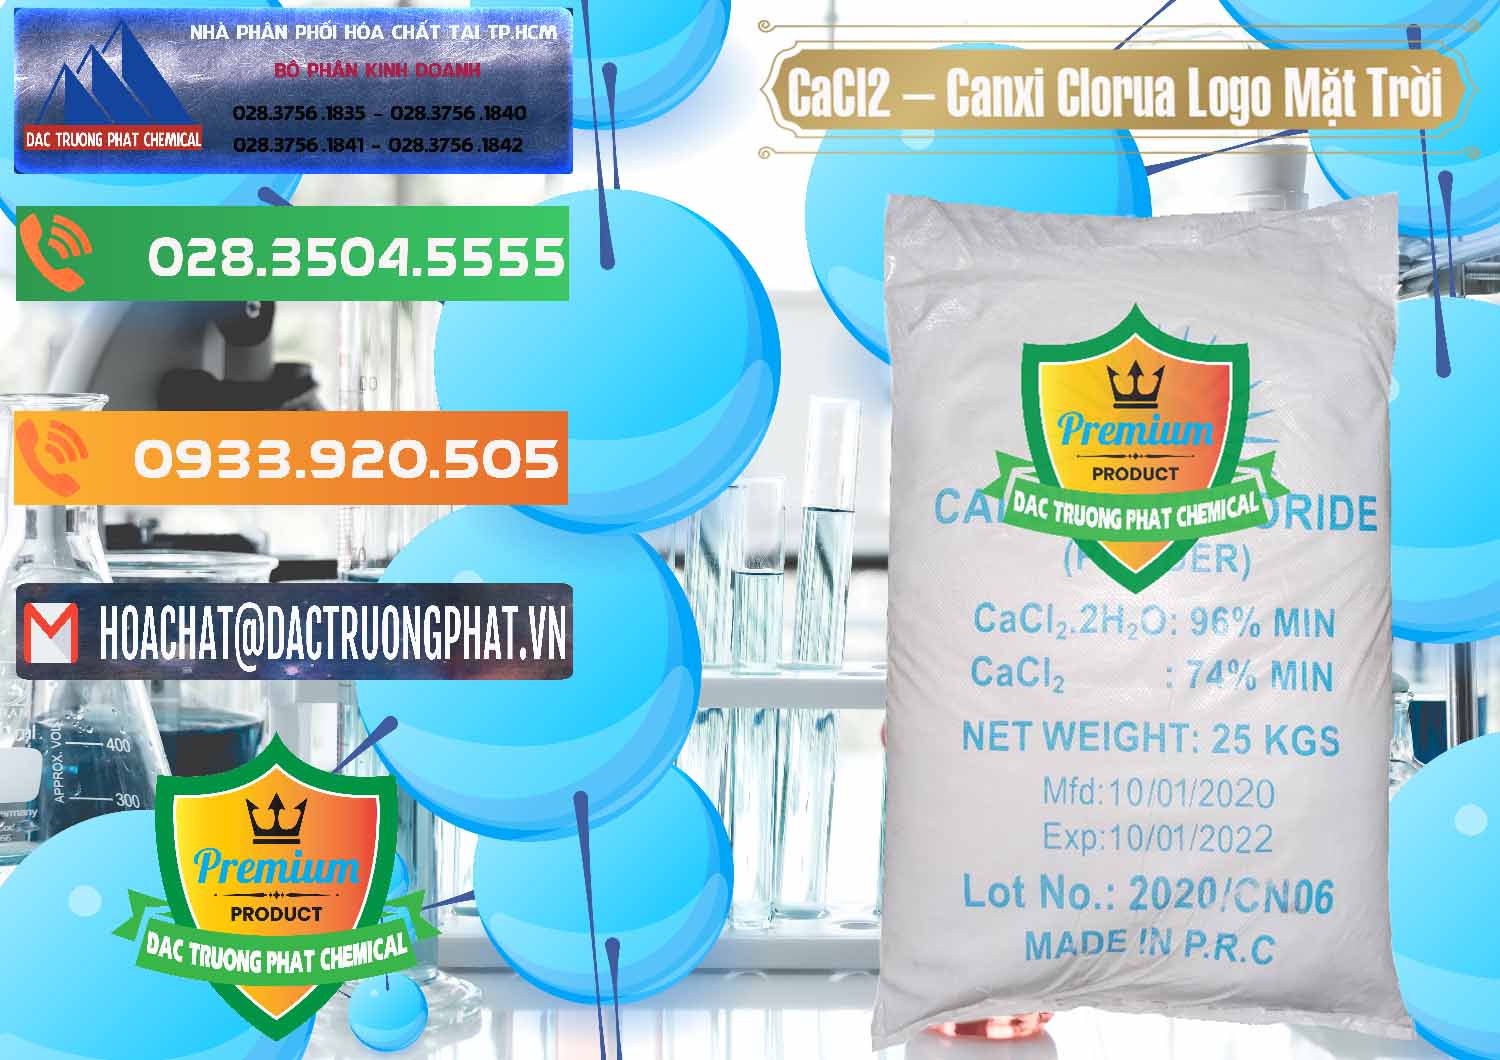 Công ty cung cấp và bán CaCl2 – Canxi Clorua 96% Logo Mặt Trời Trung Quốc China - 0041 - Đơn vị chuyên cung ứng & phân phối hóa chất tại TP.HCM - hoachatxulynuoc.com.vn